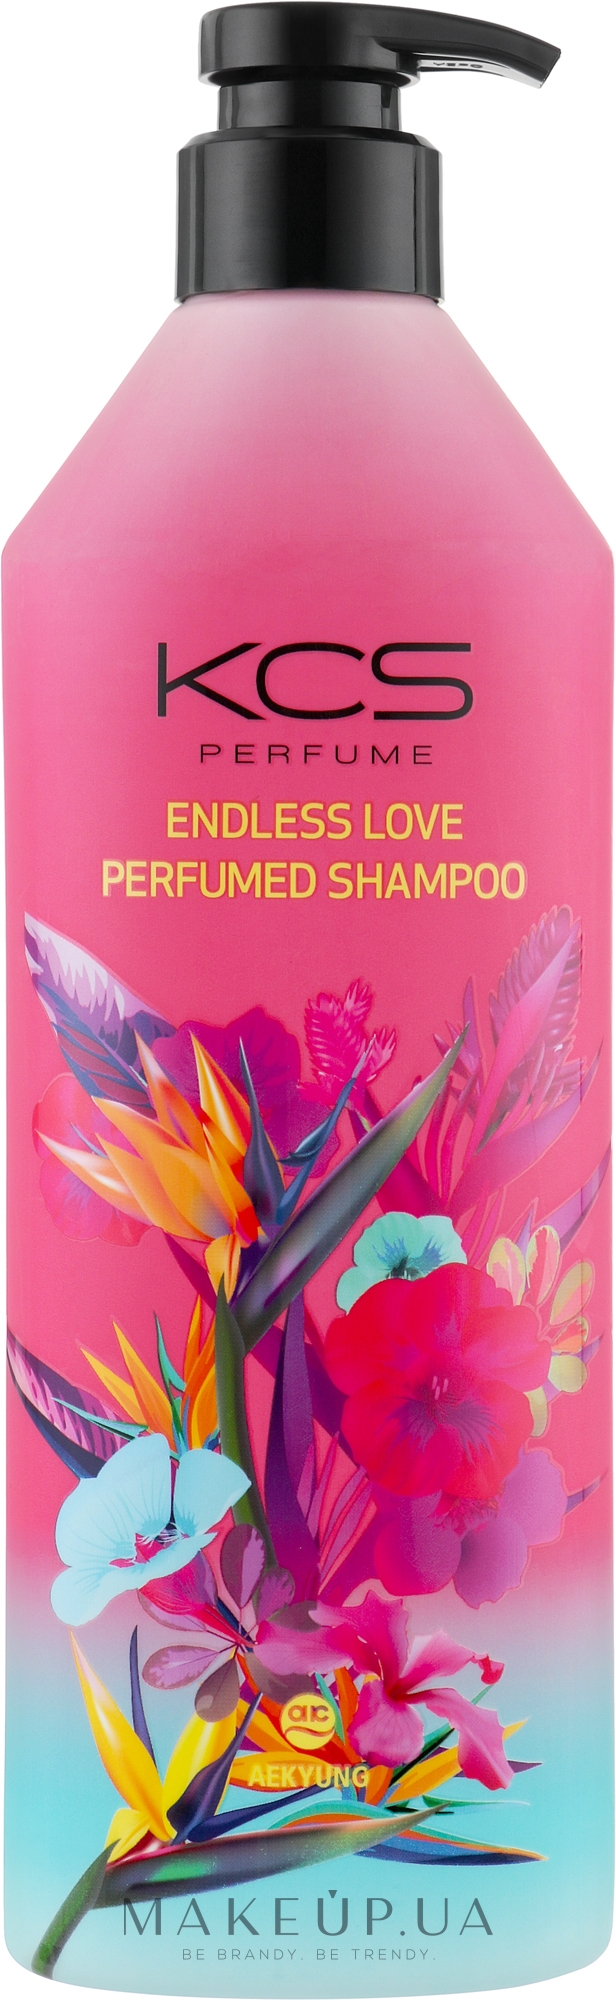 Парфюмированный шампунь для мягкого очищения волос - KCS Endless Love Perfumed Shampoo — фото 600ml